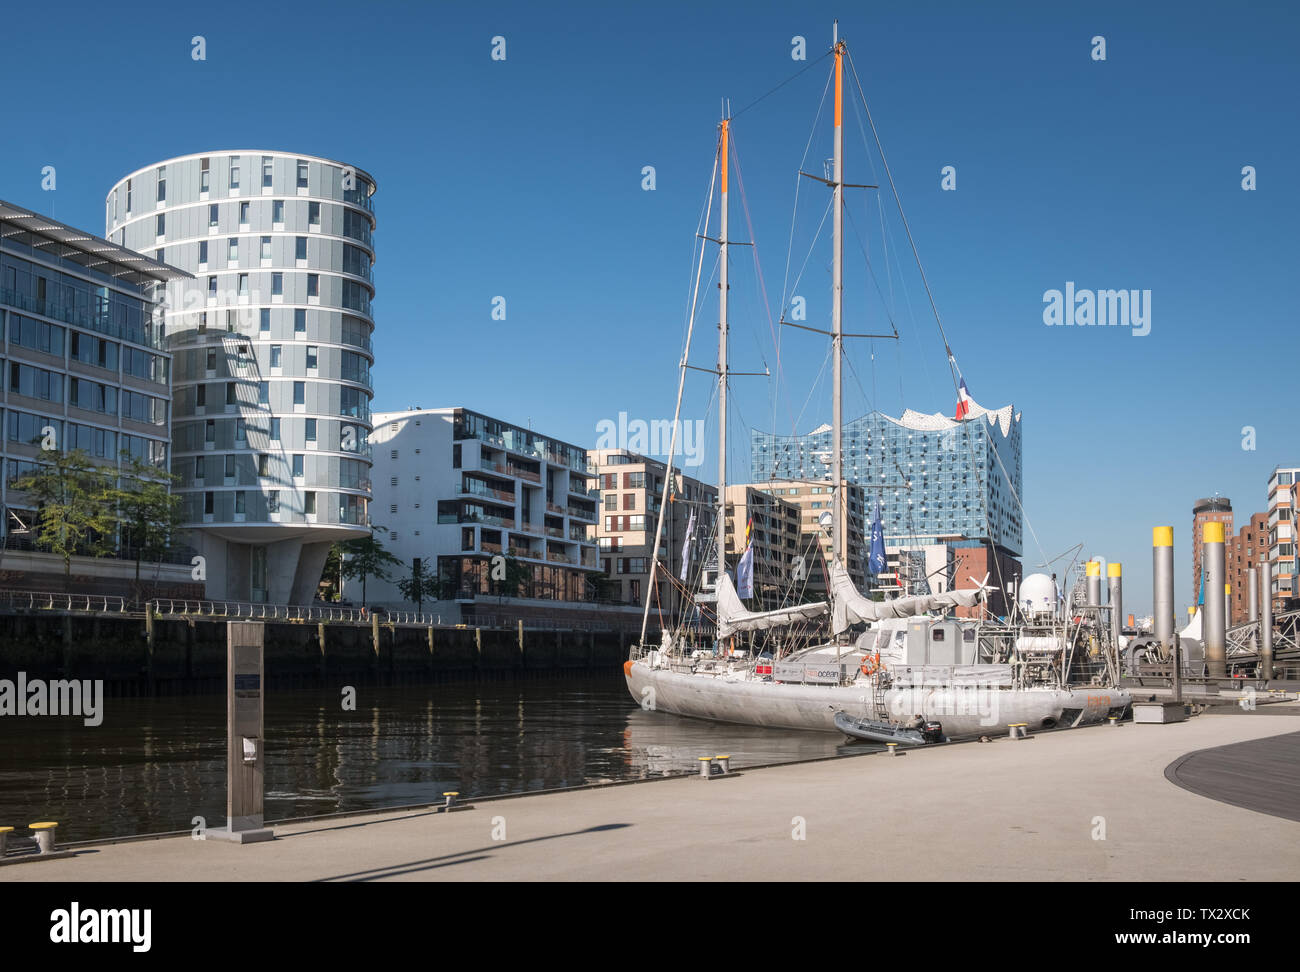 Blick auf den Hafen Sandtorhafen, mit seiner Mischung aus moderner Architektur und Liegeplatz für historische Schiffe, Hafencity, Hamburg, Deutschland. Stockfoto